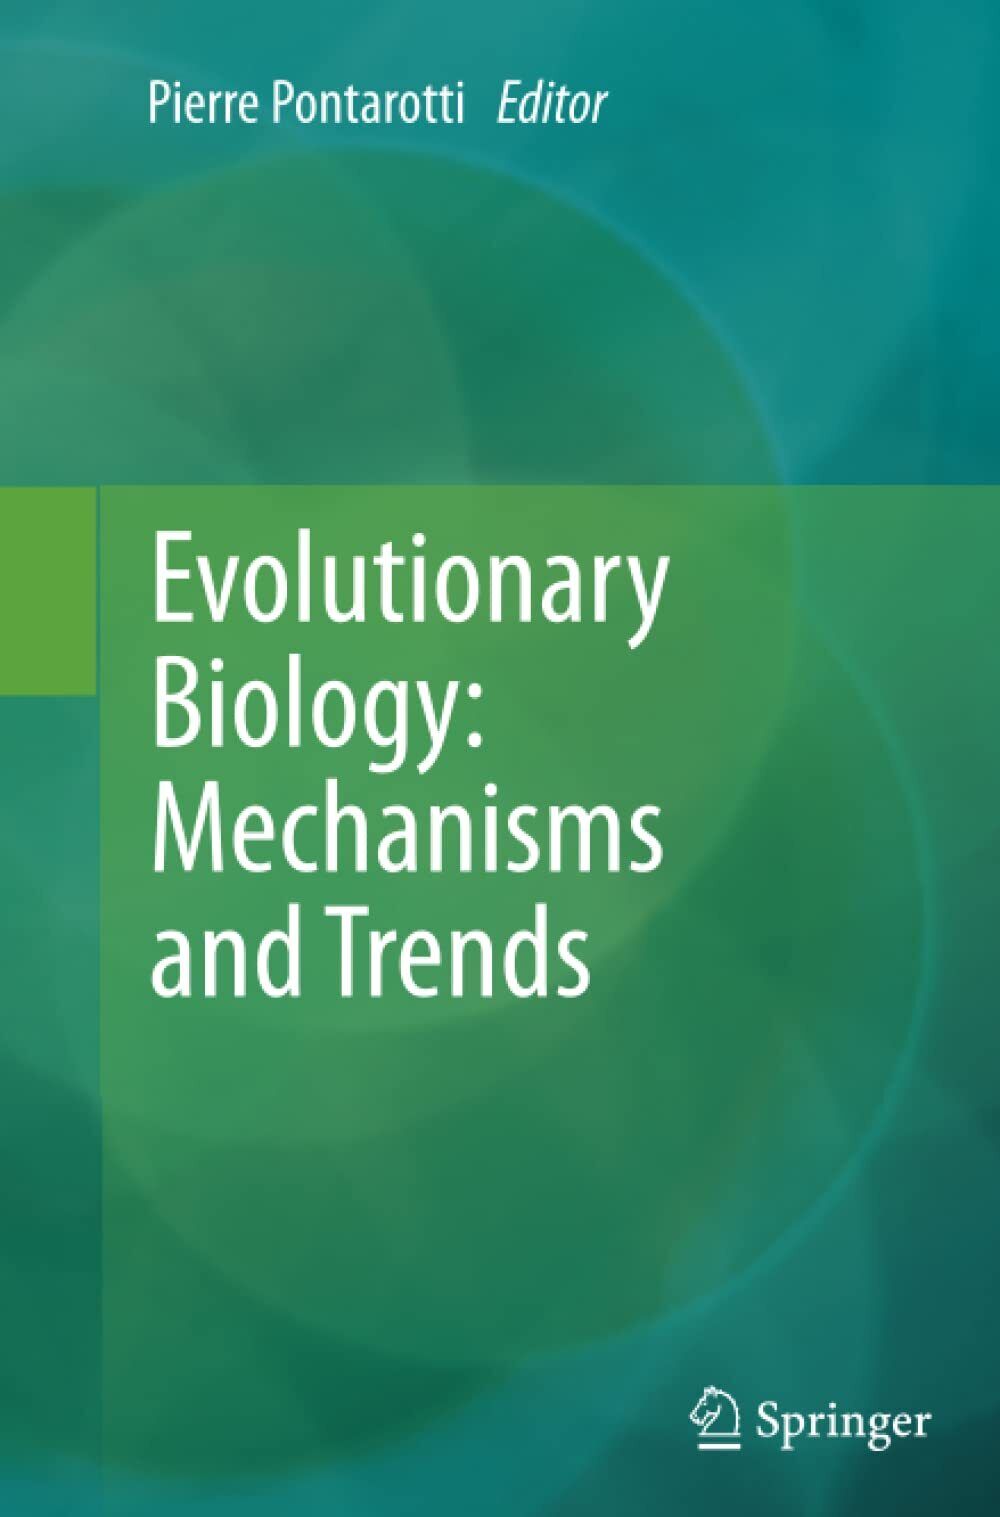 Evolutionary Biology - Pierre Pontarotti - Springer, 2014